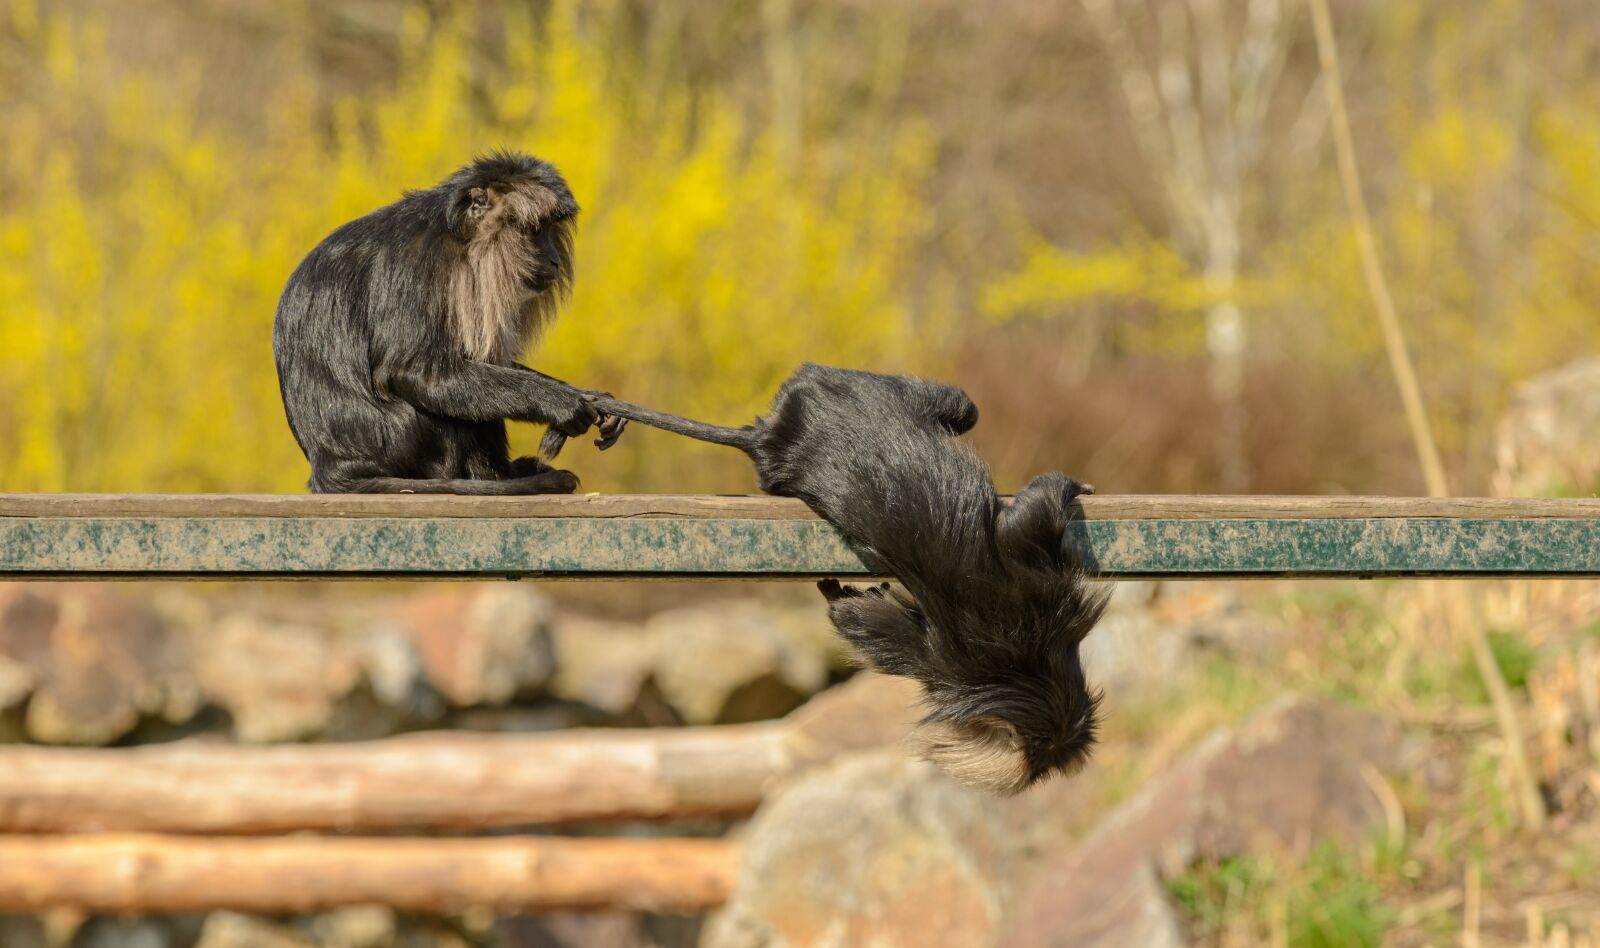 Nikon D800E sample photo. Monkey, macaque, games photography